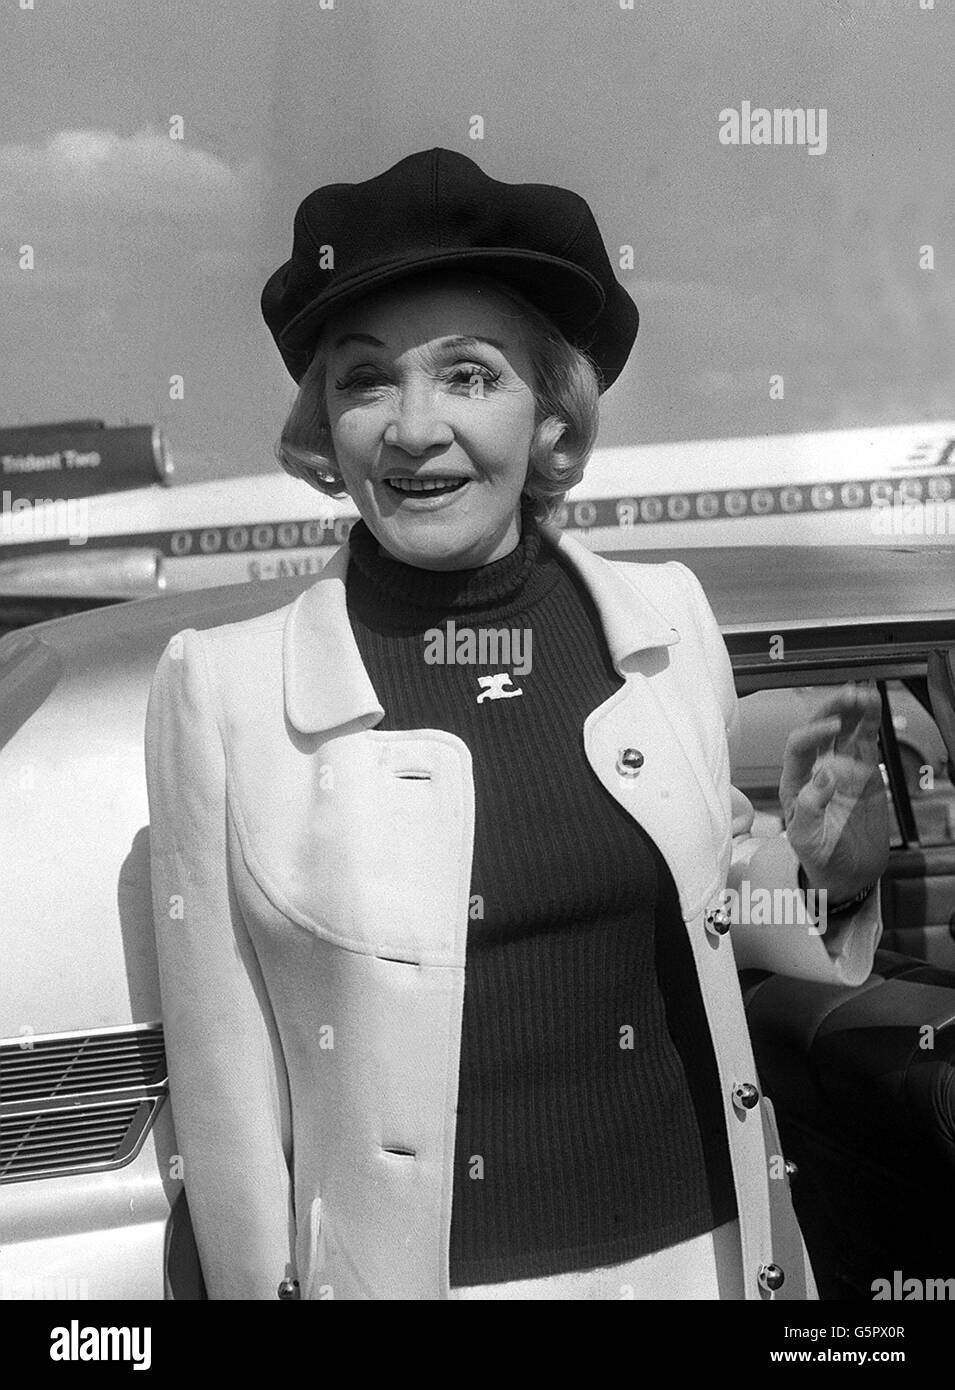 Nata a Berlino, Marlene Dietrich, la nonna più glamour del mondo, in tuta pantaloni, maglione e cappello tipo ricino, all'arrivo da Parigi. Marlene prima entusiasta i filmgoer con 'Lili Marlene' e 'Falling in Love Again' nel film 'Blue Angel'. Foto Stock